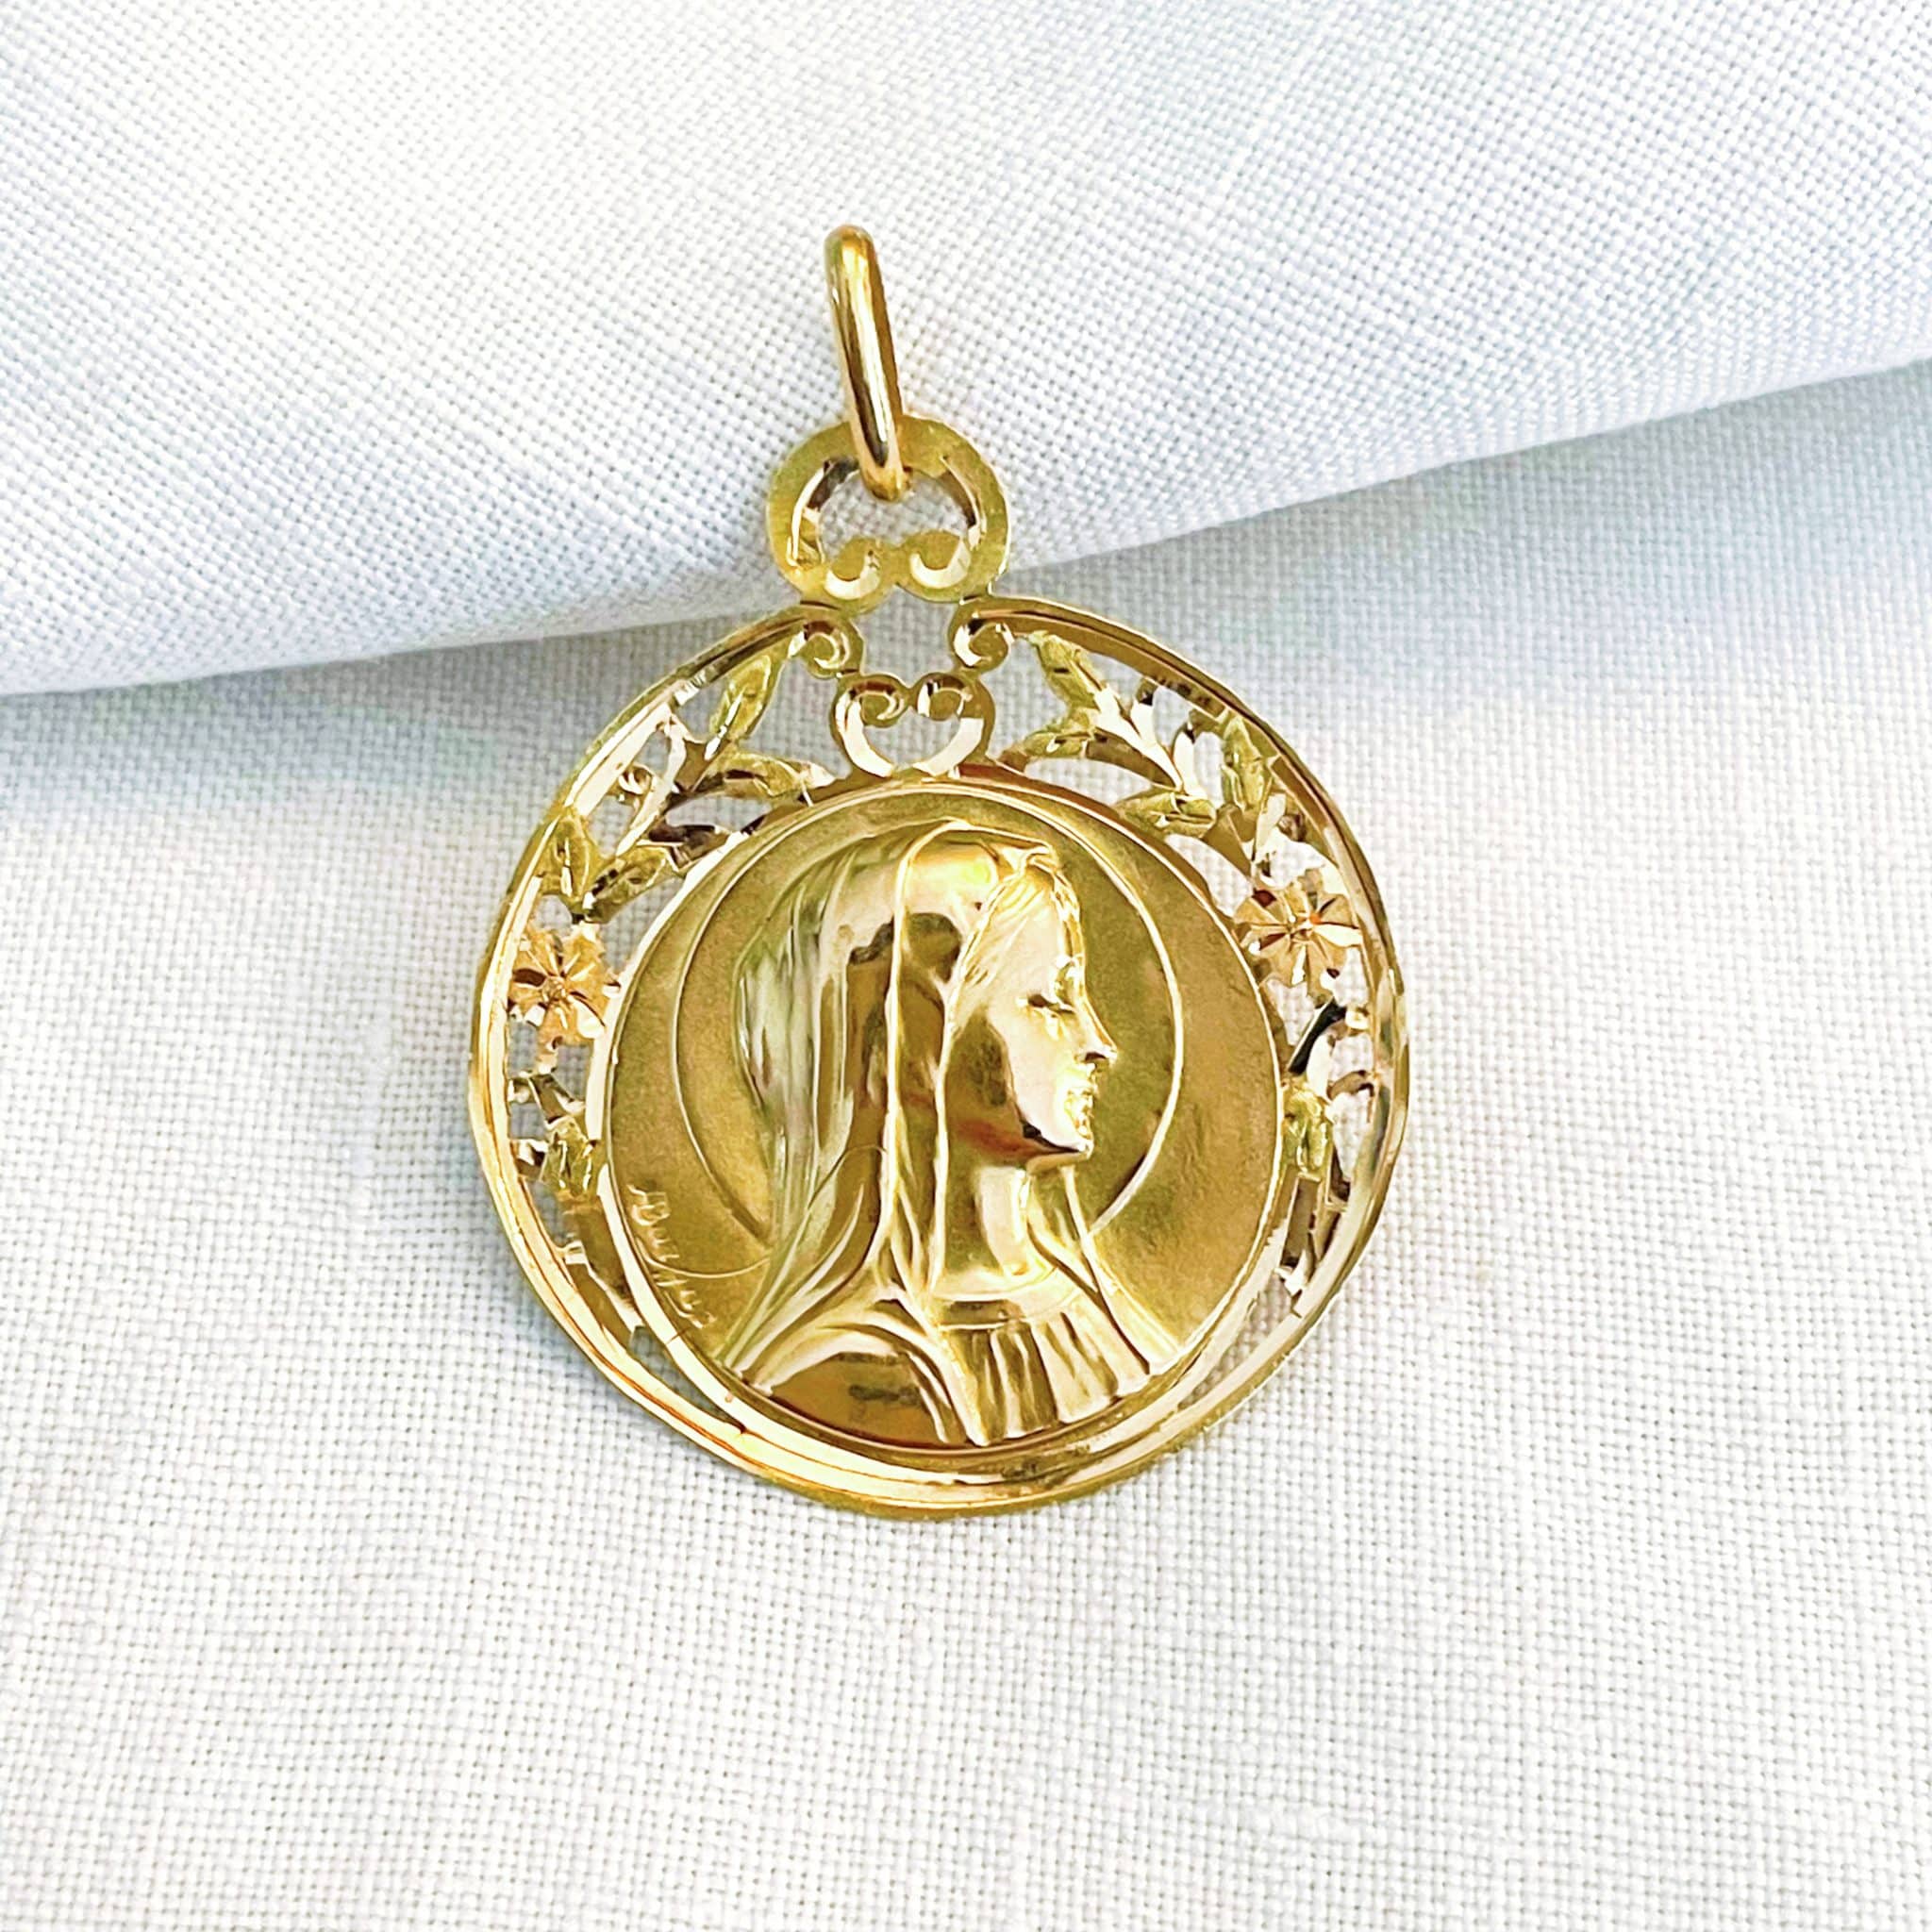 Grosse médaille ancienne en or de la Vierge Marie auréolée